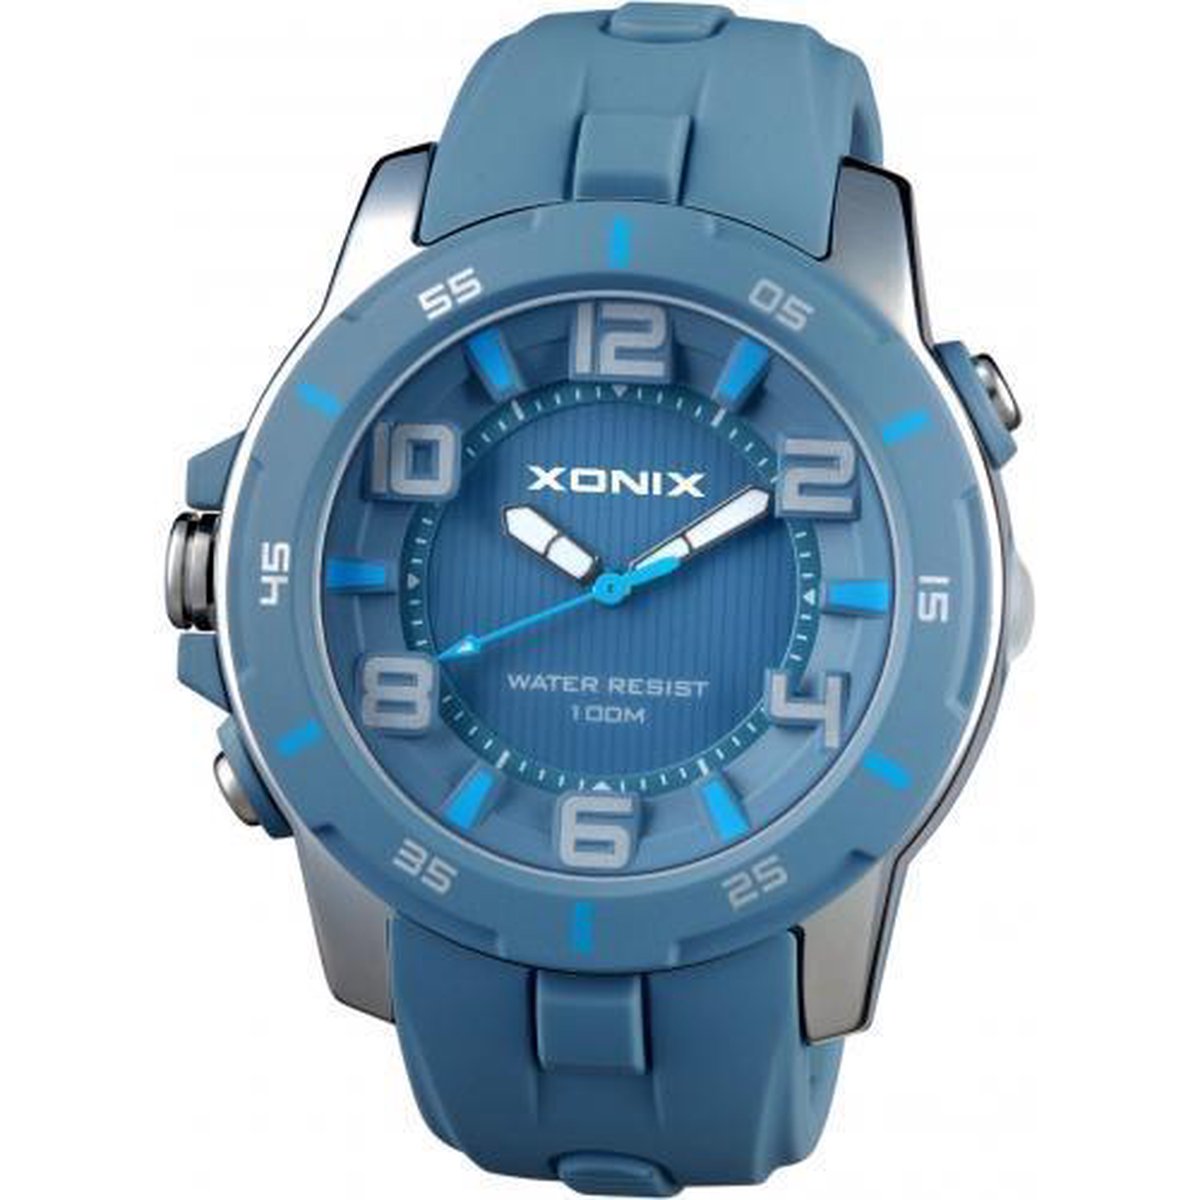 Xonix horloge met backlight en zijverlichting CAE-002